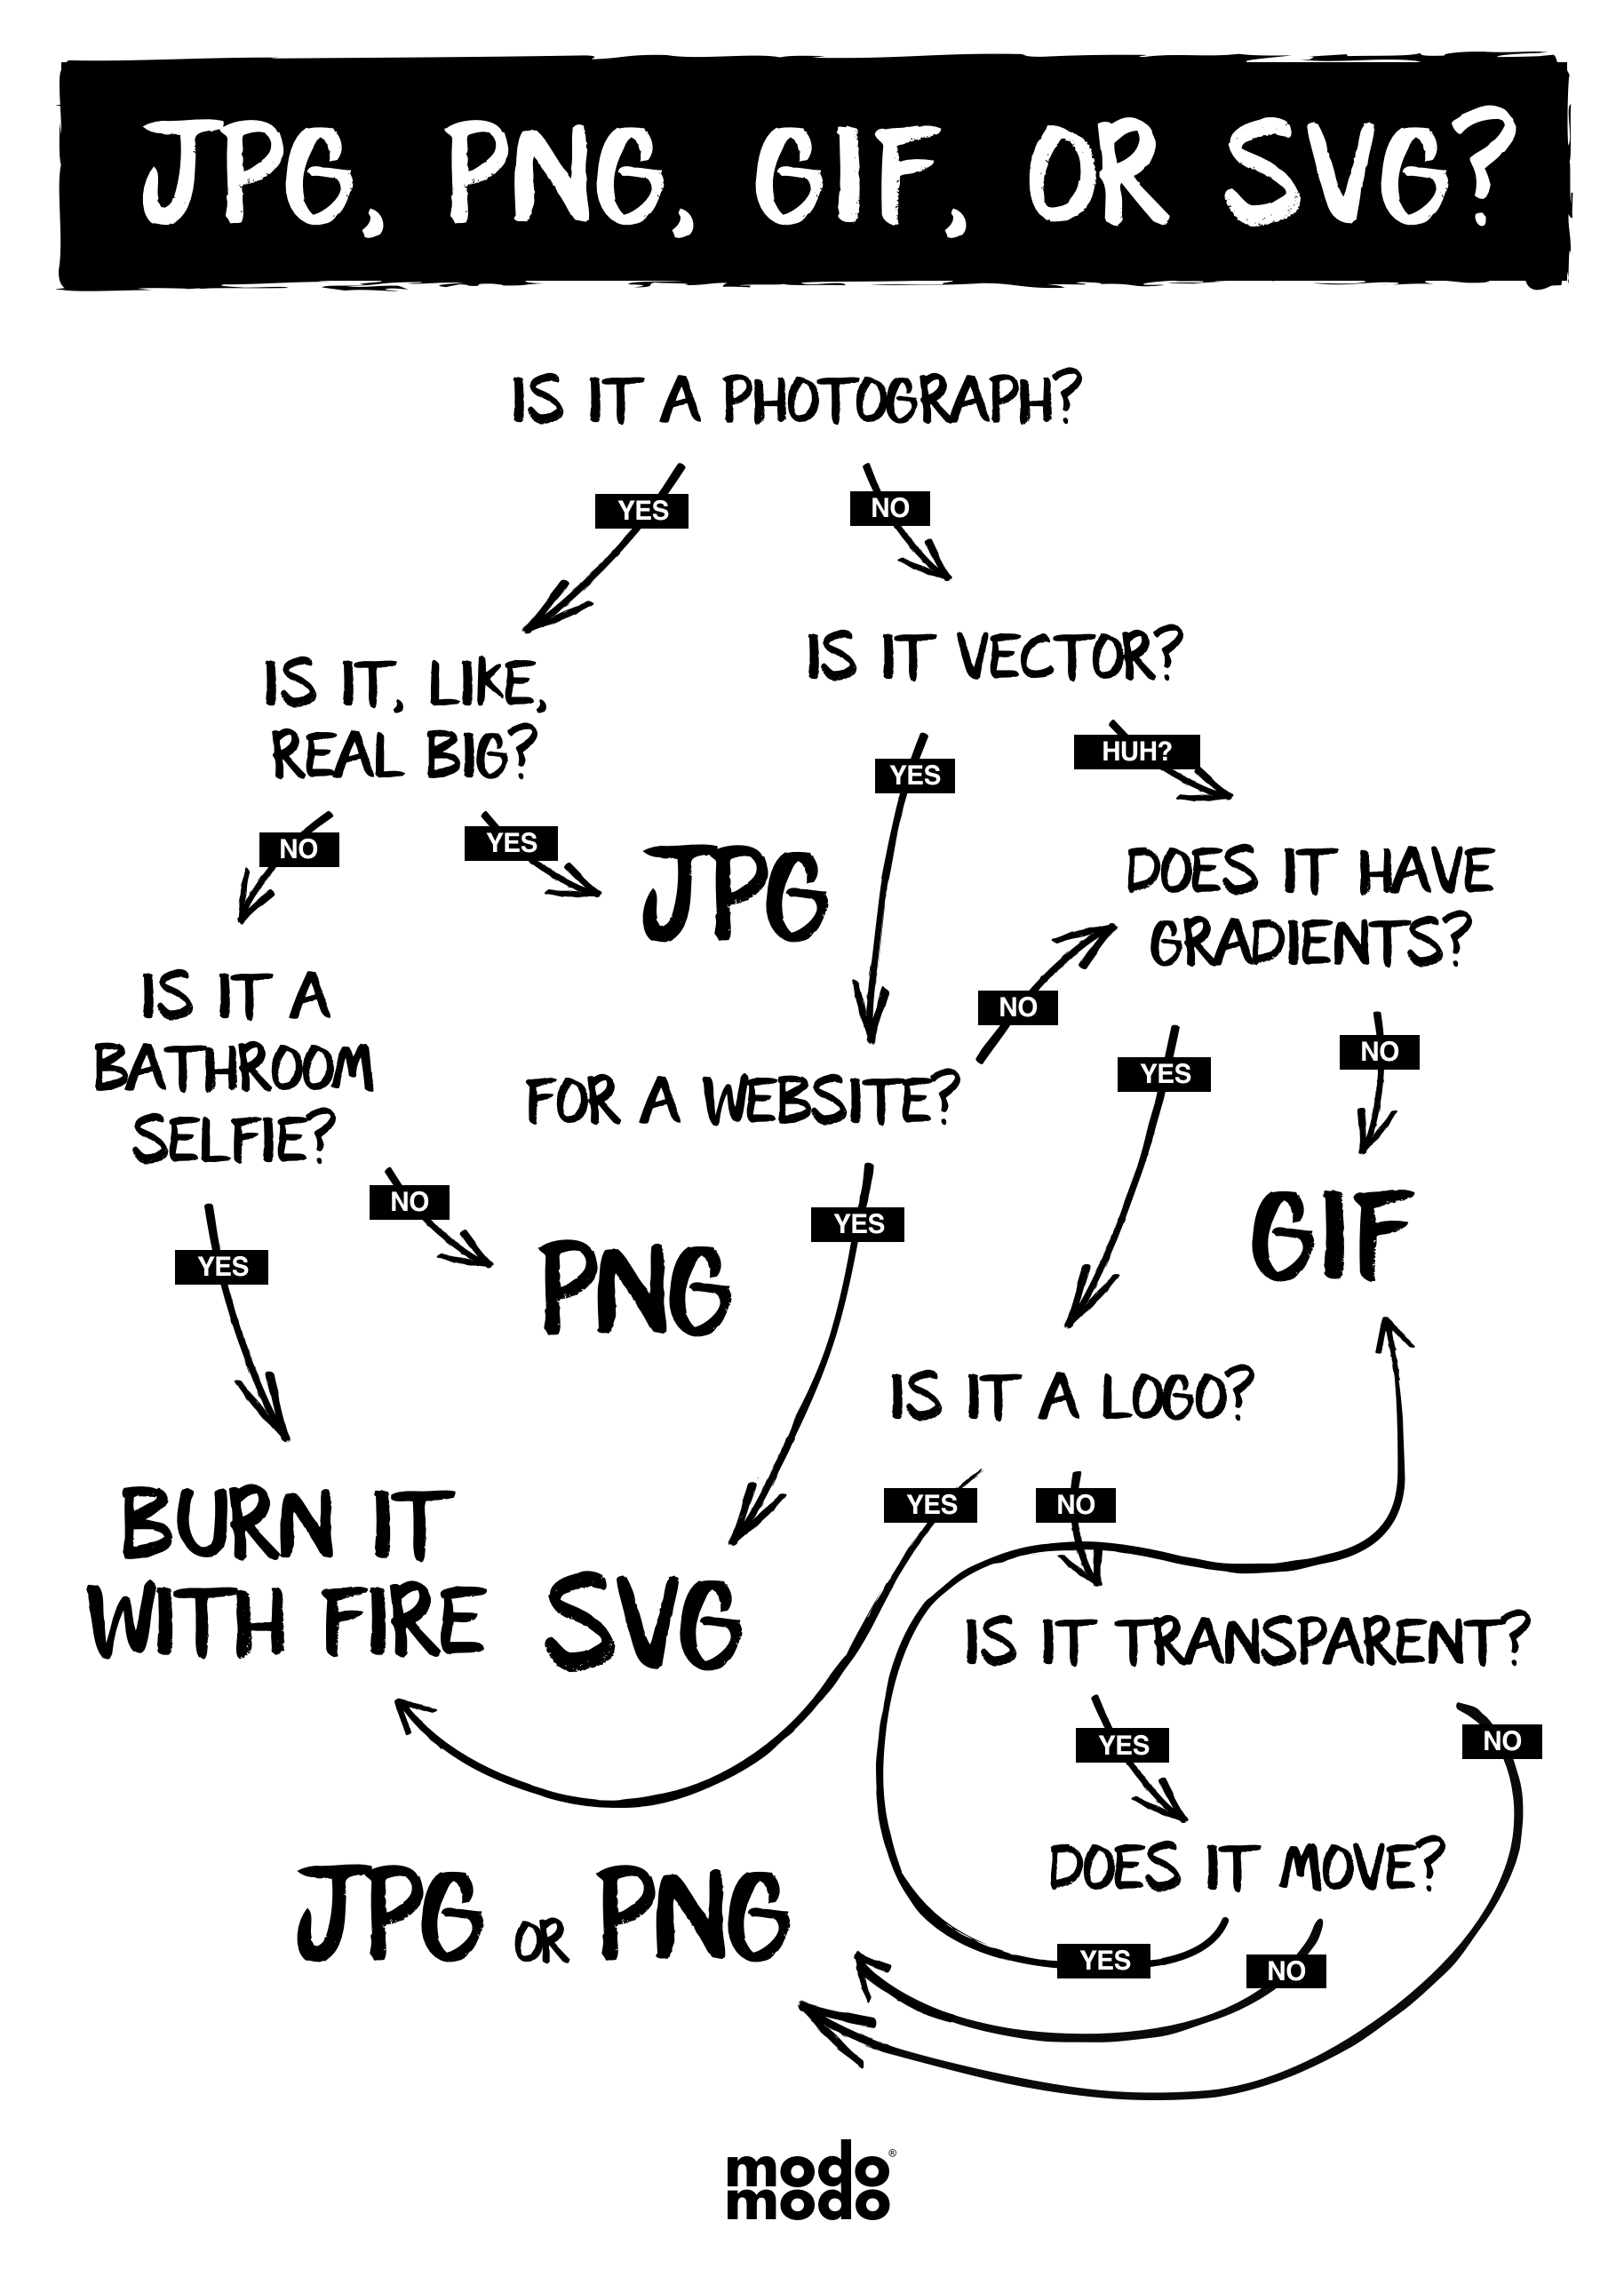 JPG PNG GIF SVG chart